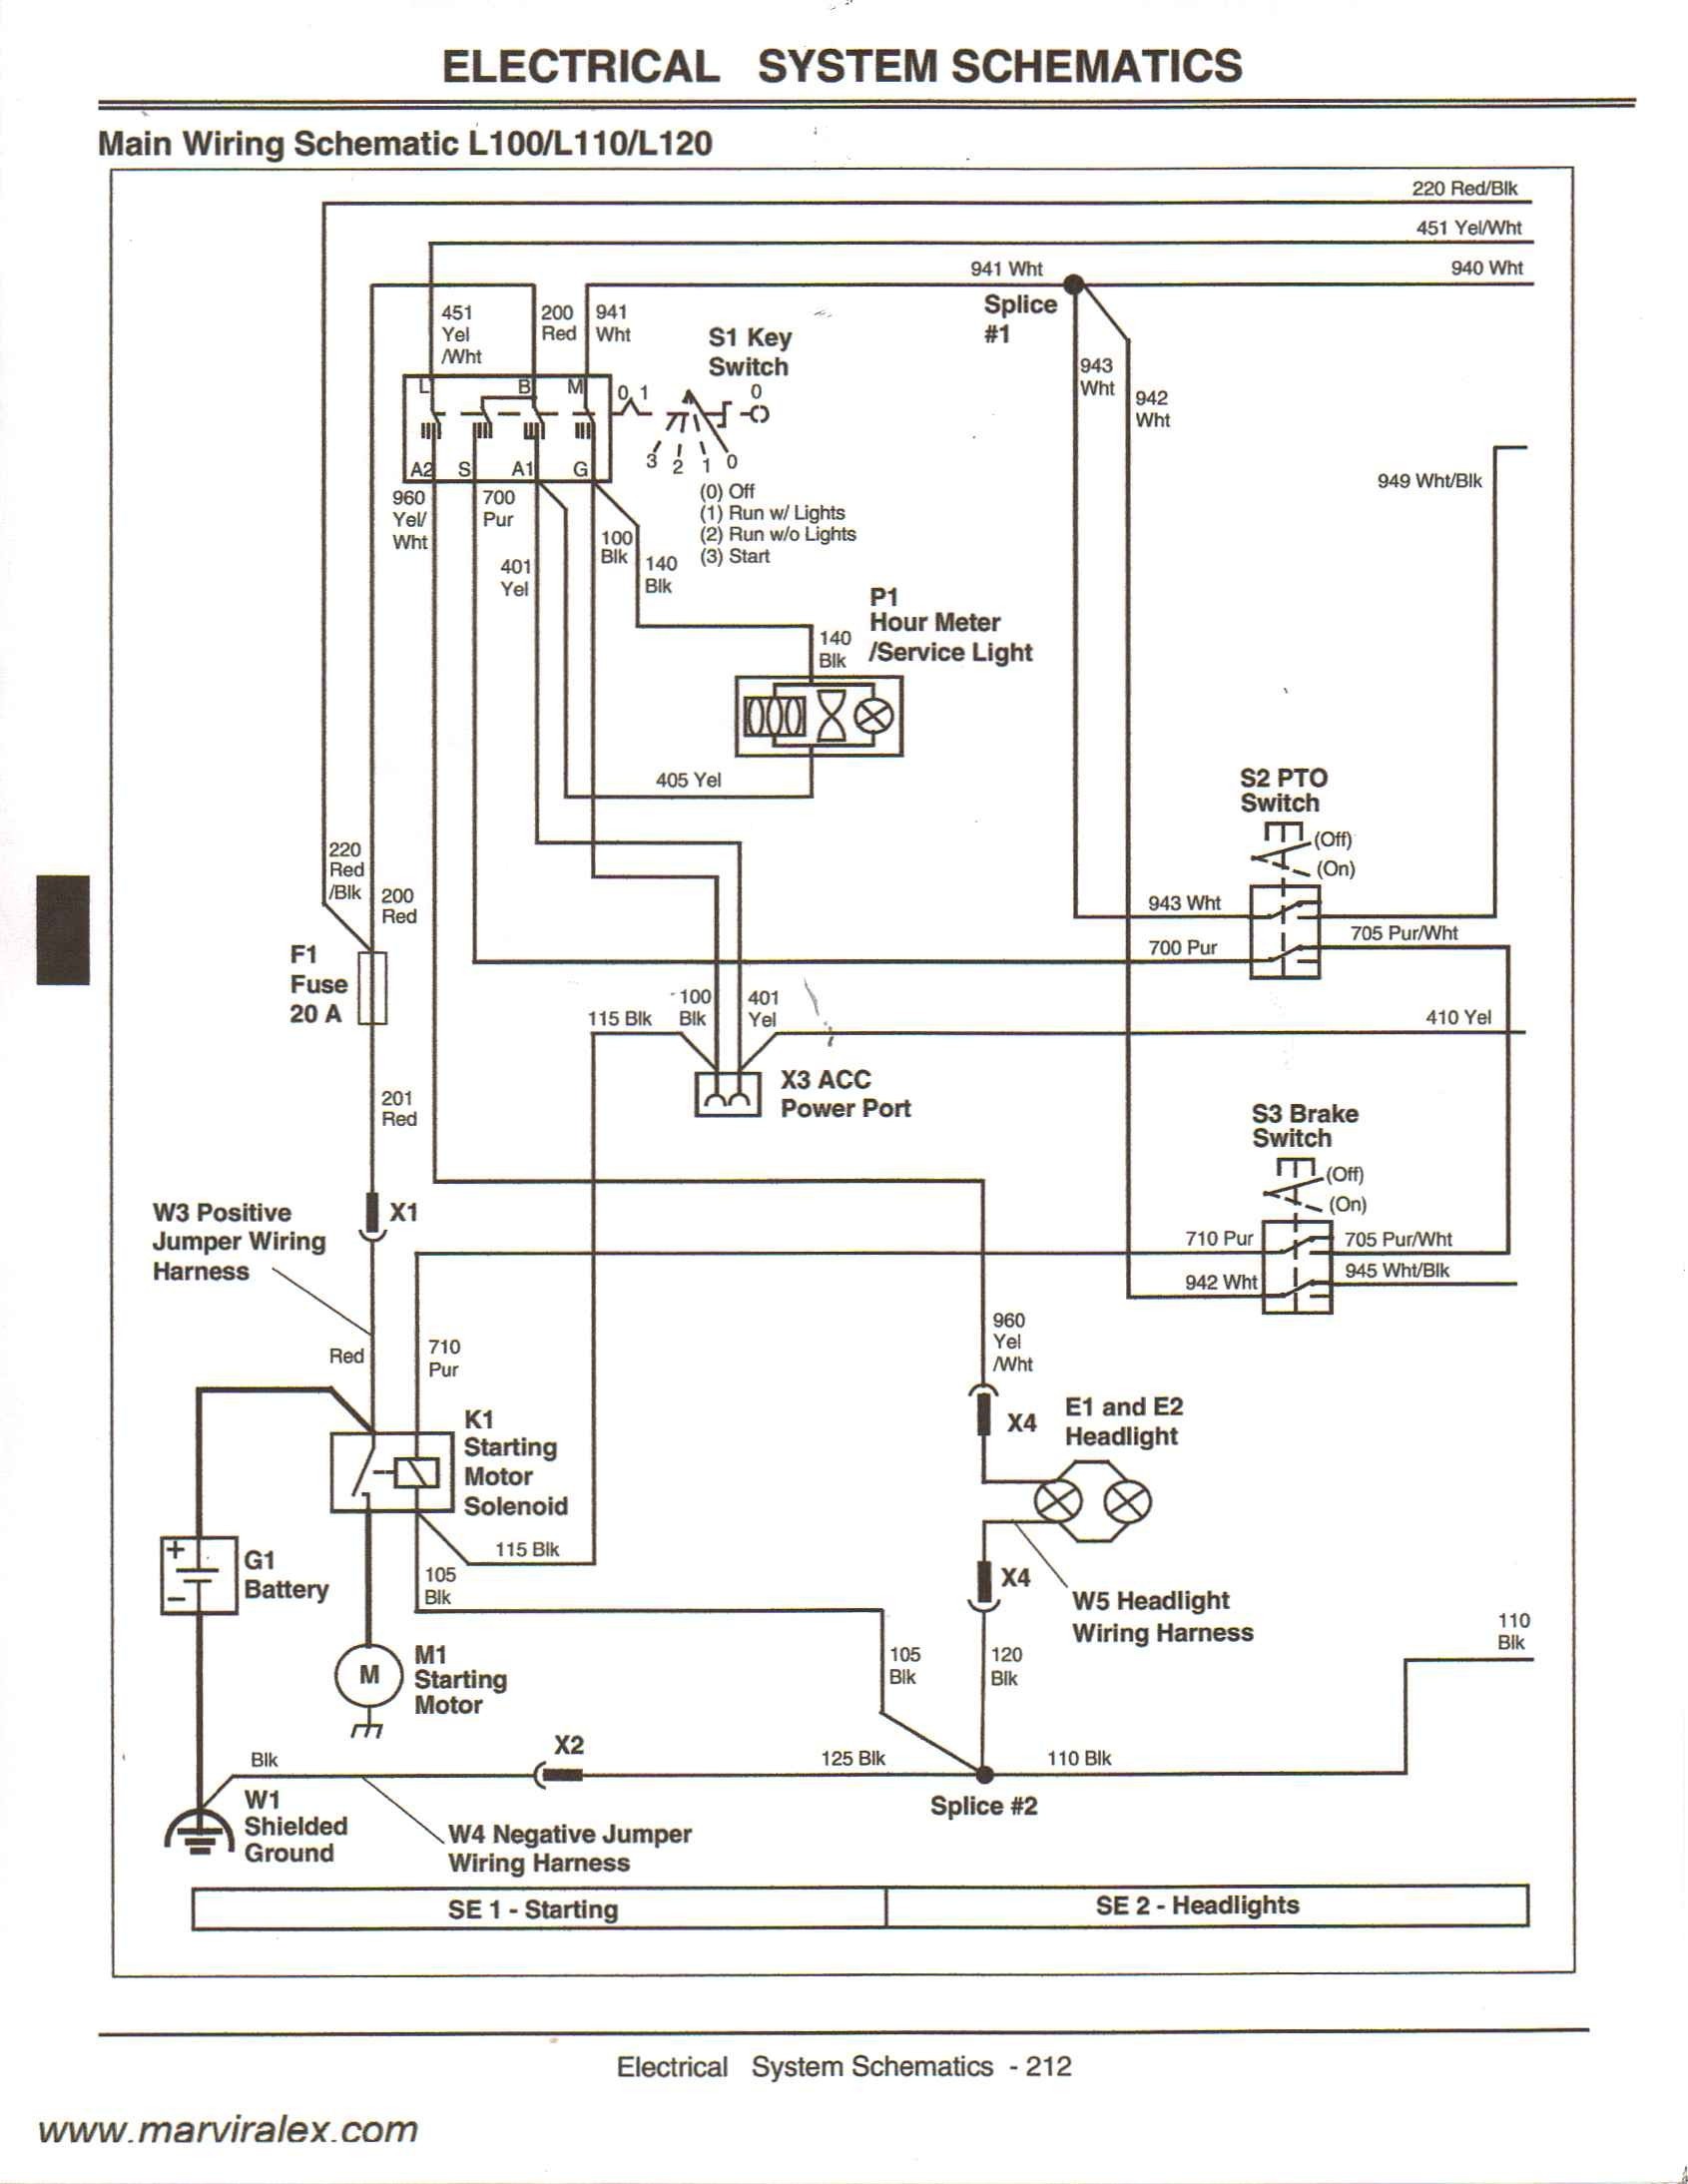 John Deere Wiring Diagrams Unique John Deere Gator 4—2 Wiring Diagram Best – Wiring Diagram Collection